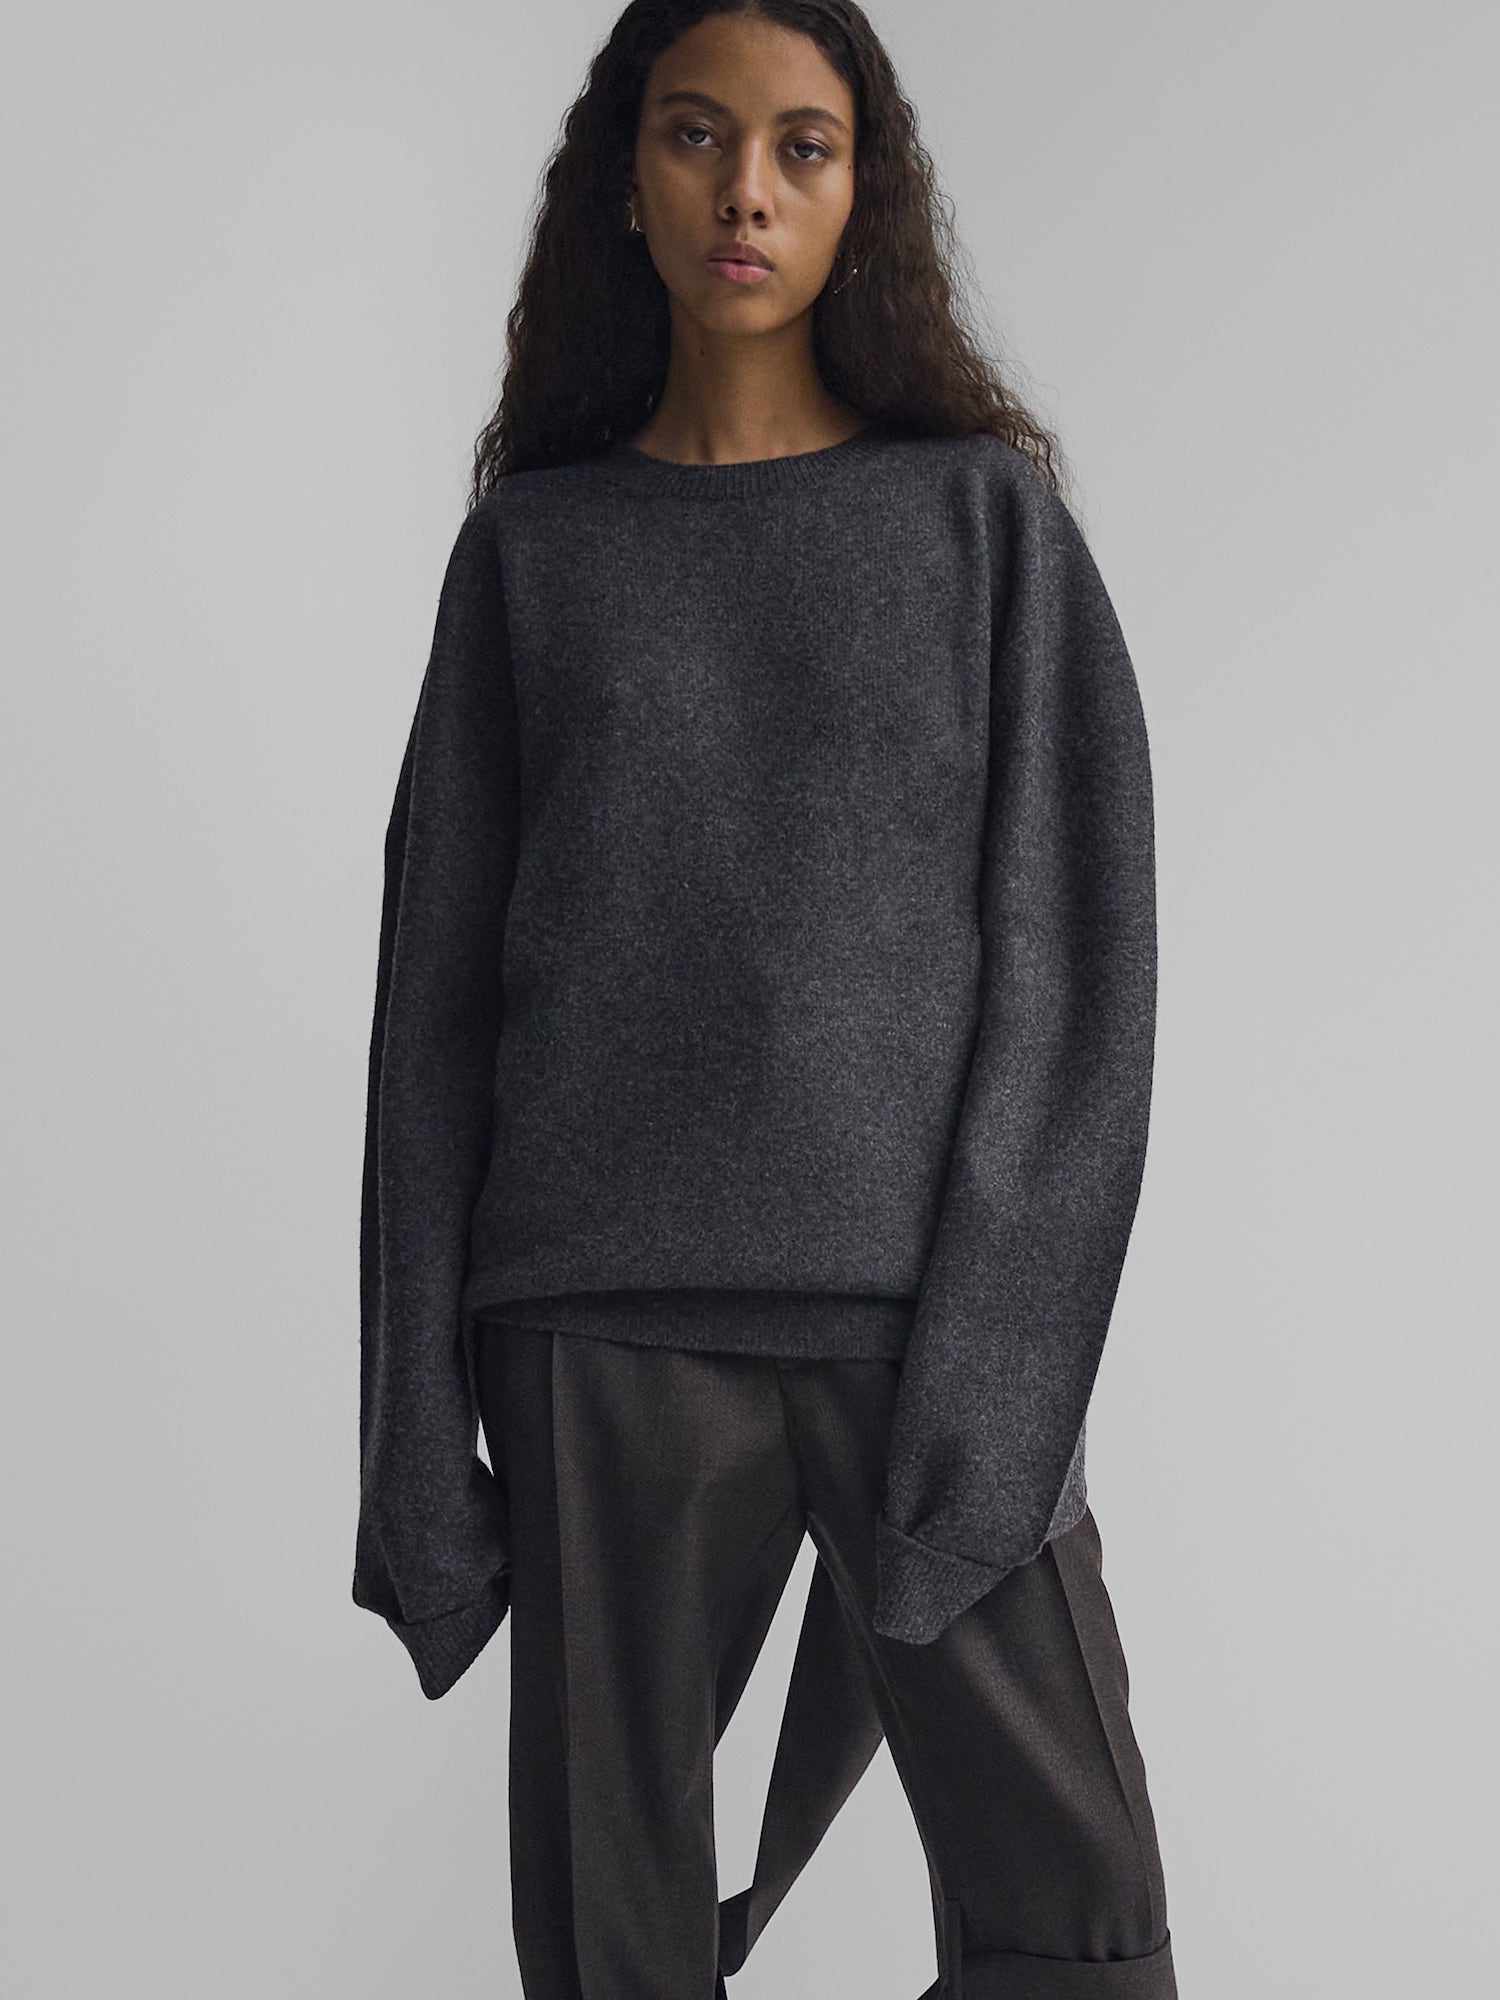 Modelo em um suéter de caxemira cinza-carbono com um decote redondo e calças plissadas de Phoebe Philo